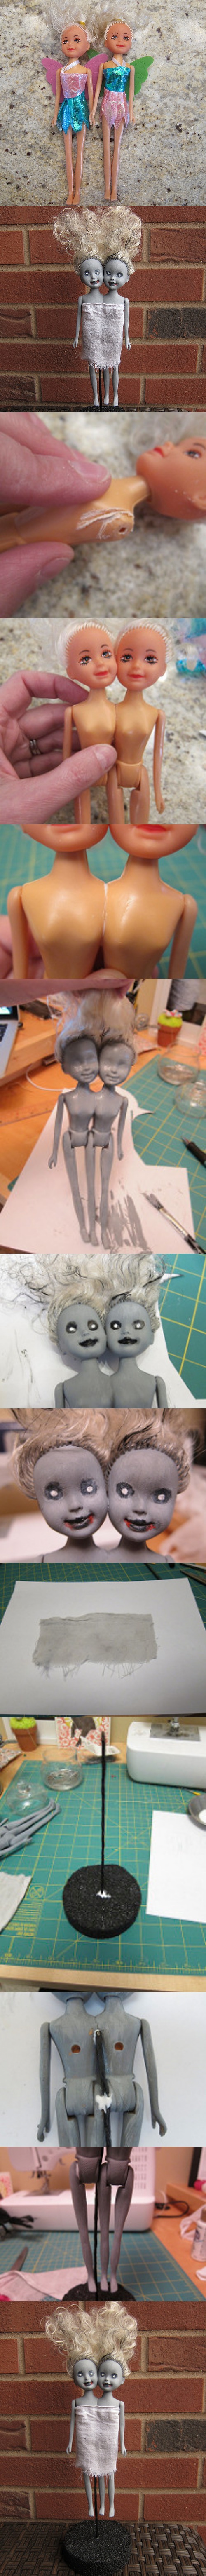 5. Zombie Siamese Twin Dolls